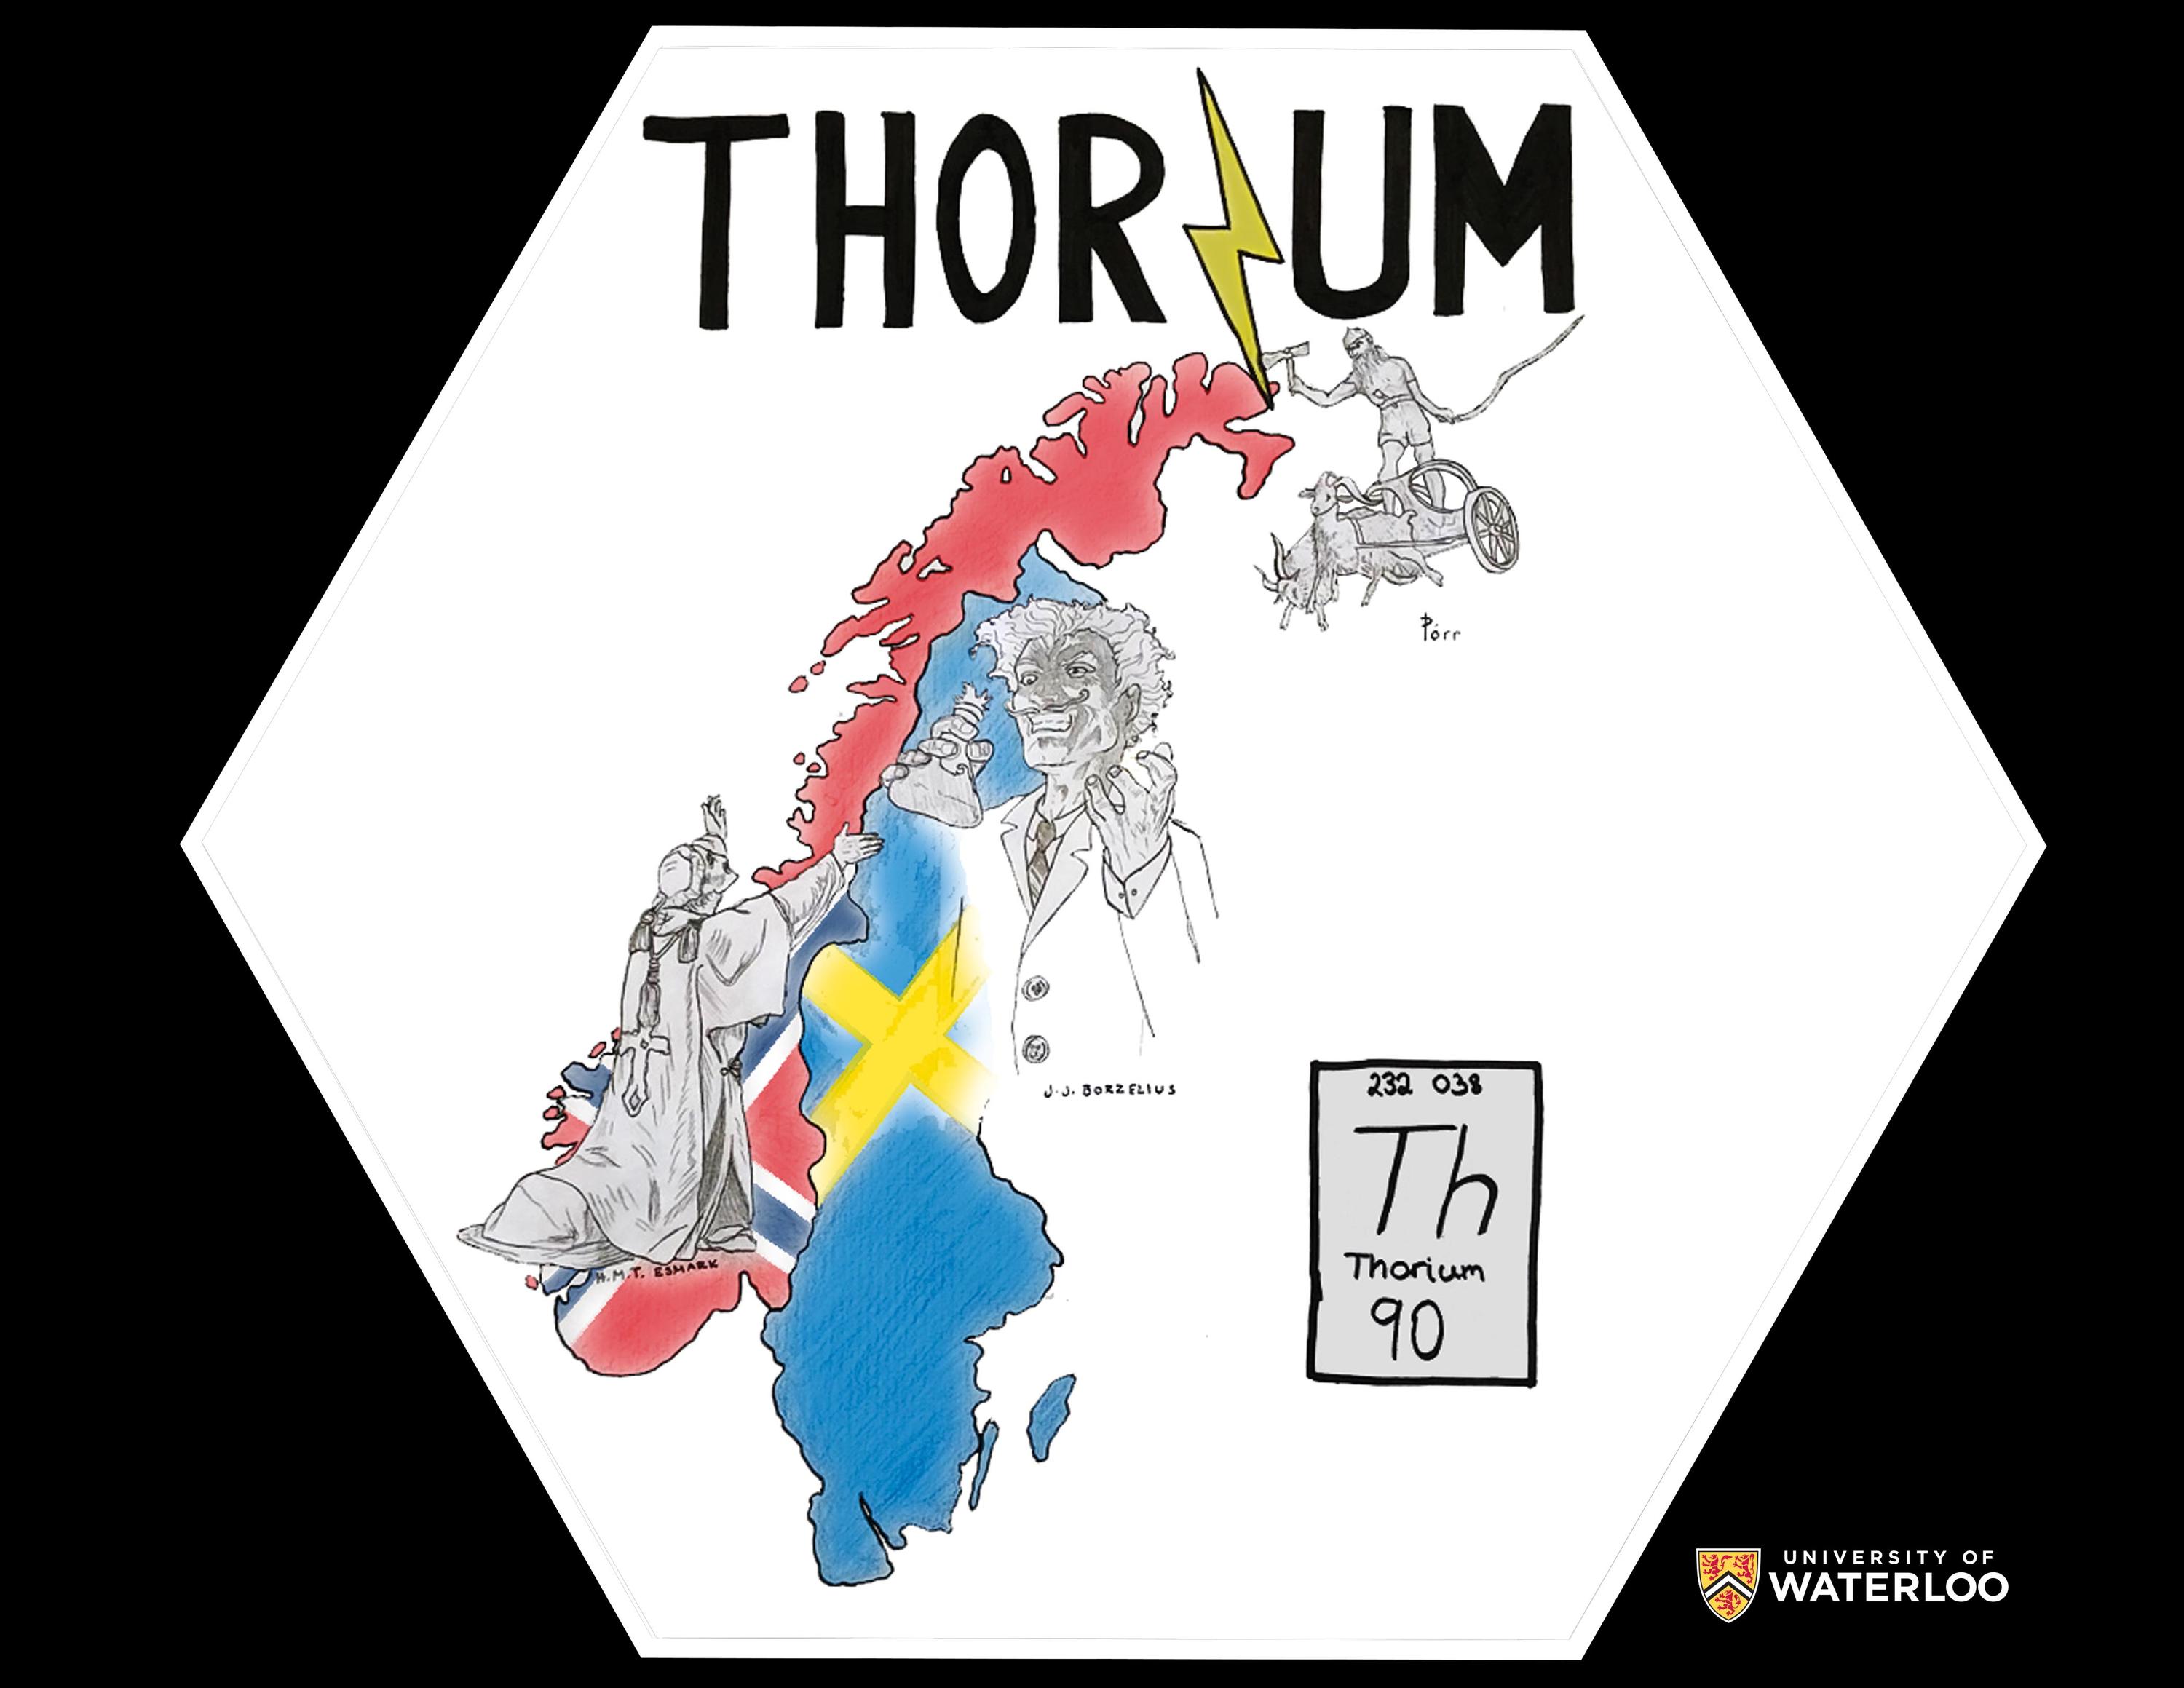 Thorium, 90